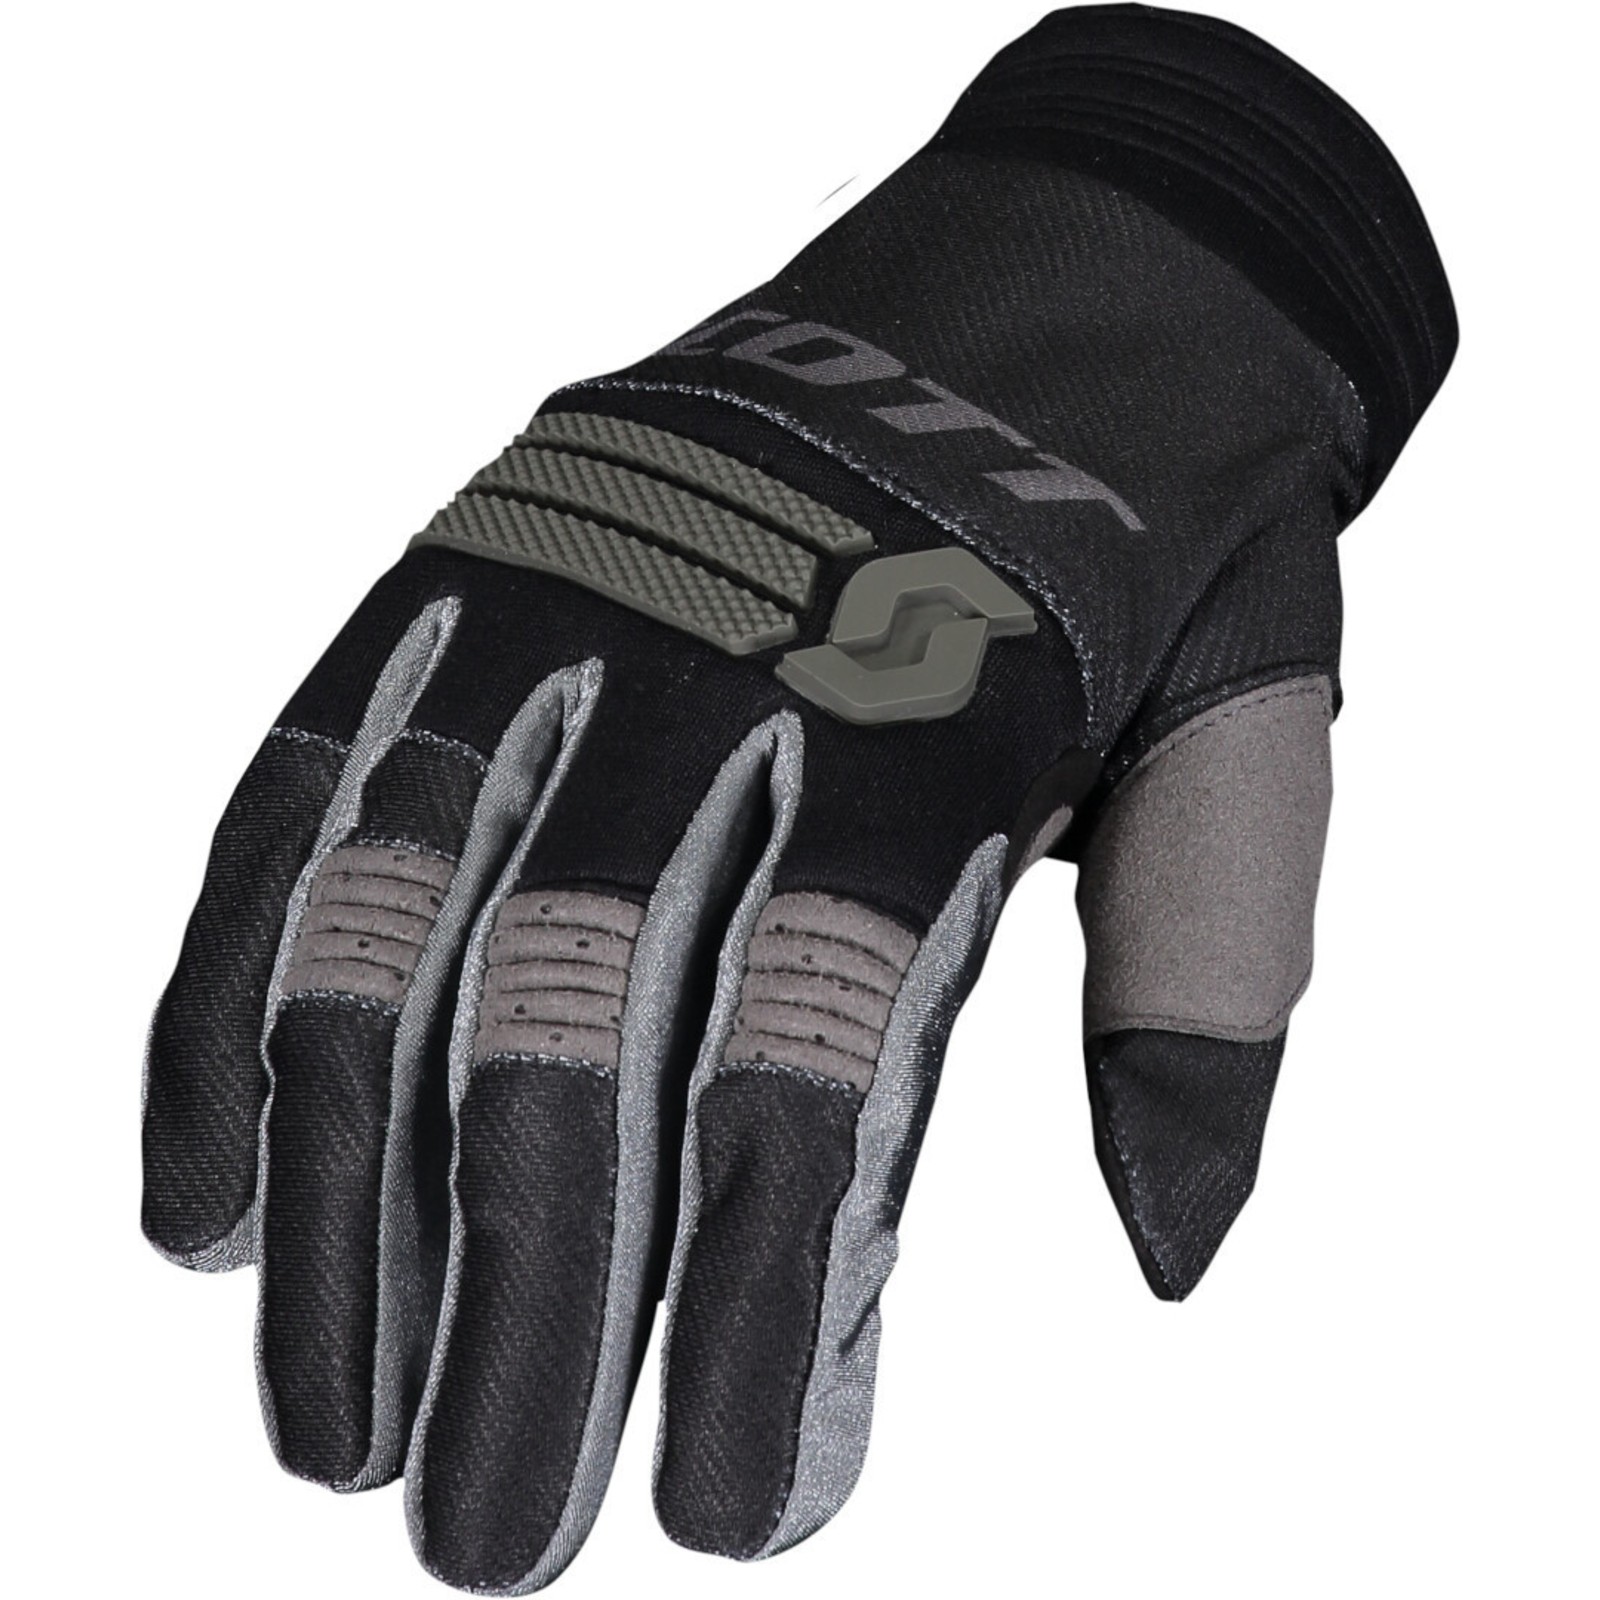 SHOT Cross Enduro Handschuhe CONTACT MAORI weiss-schwarz  Gr 8-13 S-3XL 